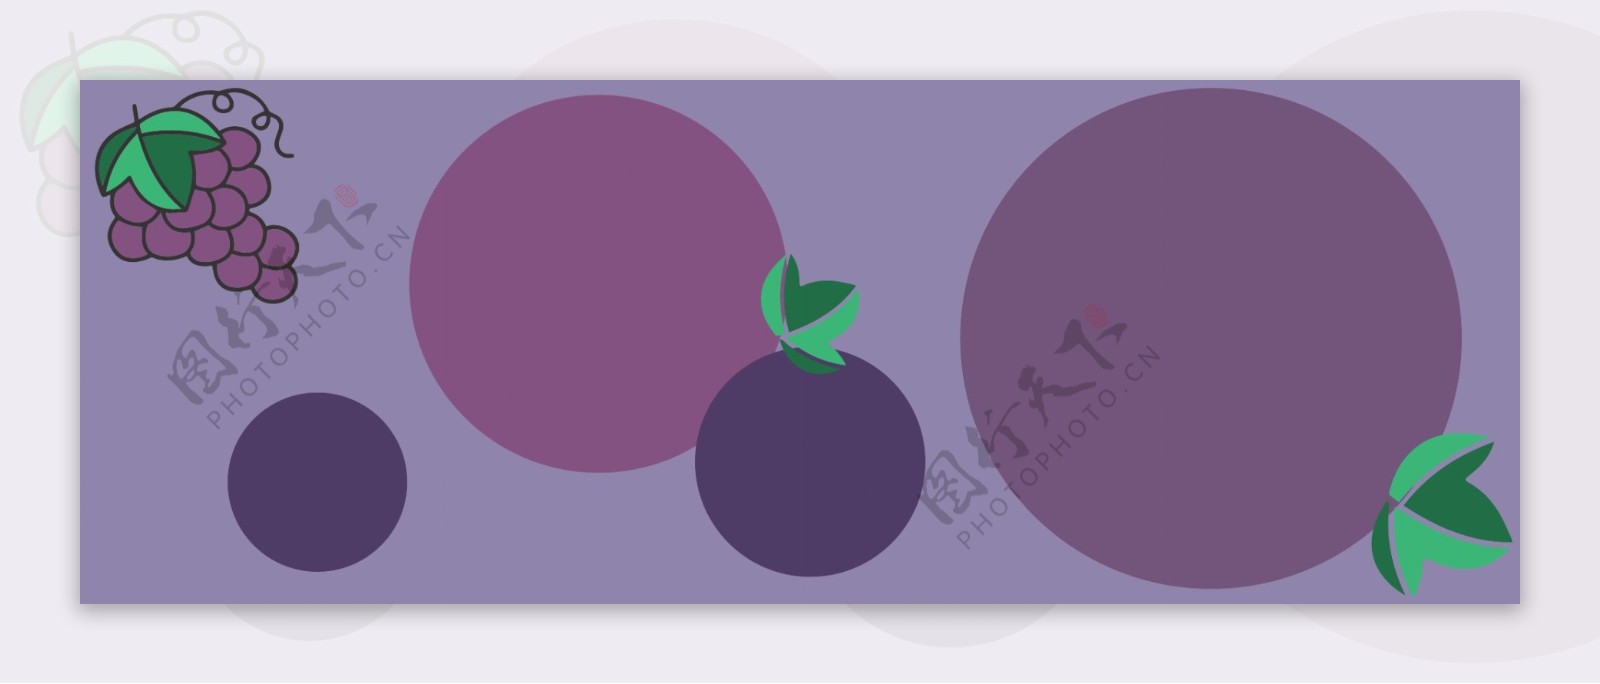 纯原创简约小清新水果紫色葡萄背景图素材